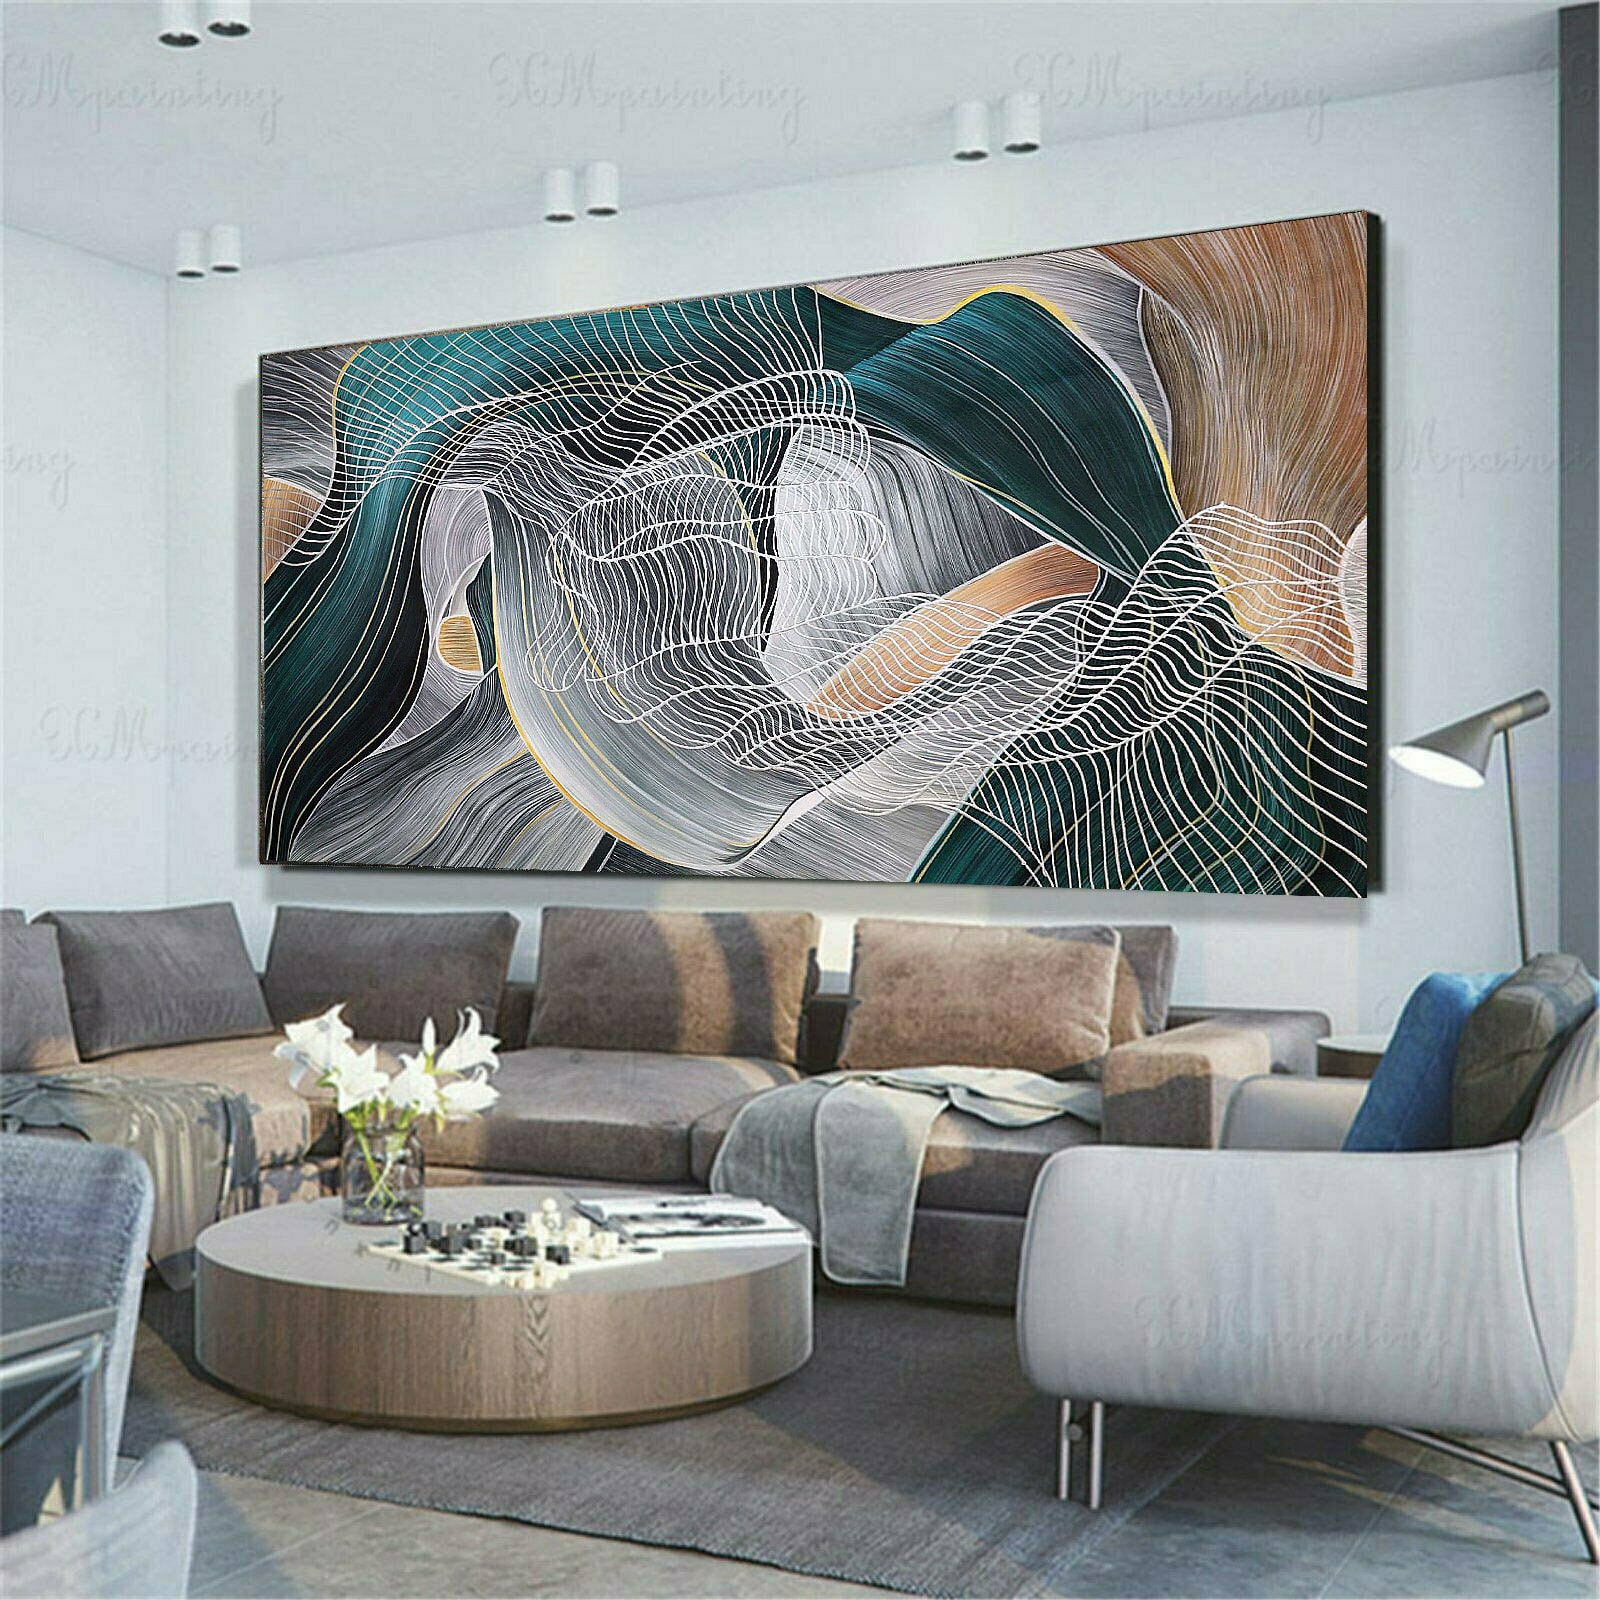 100Cm X 200Cm Original Xxl Acryl Gemälde Großes Bild Leinwand throughout Bilder Wohnzimmer Groß